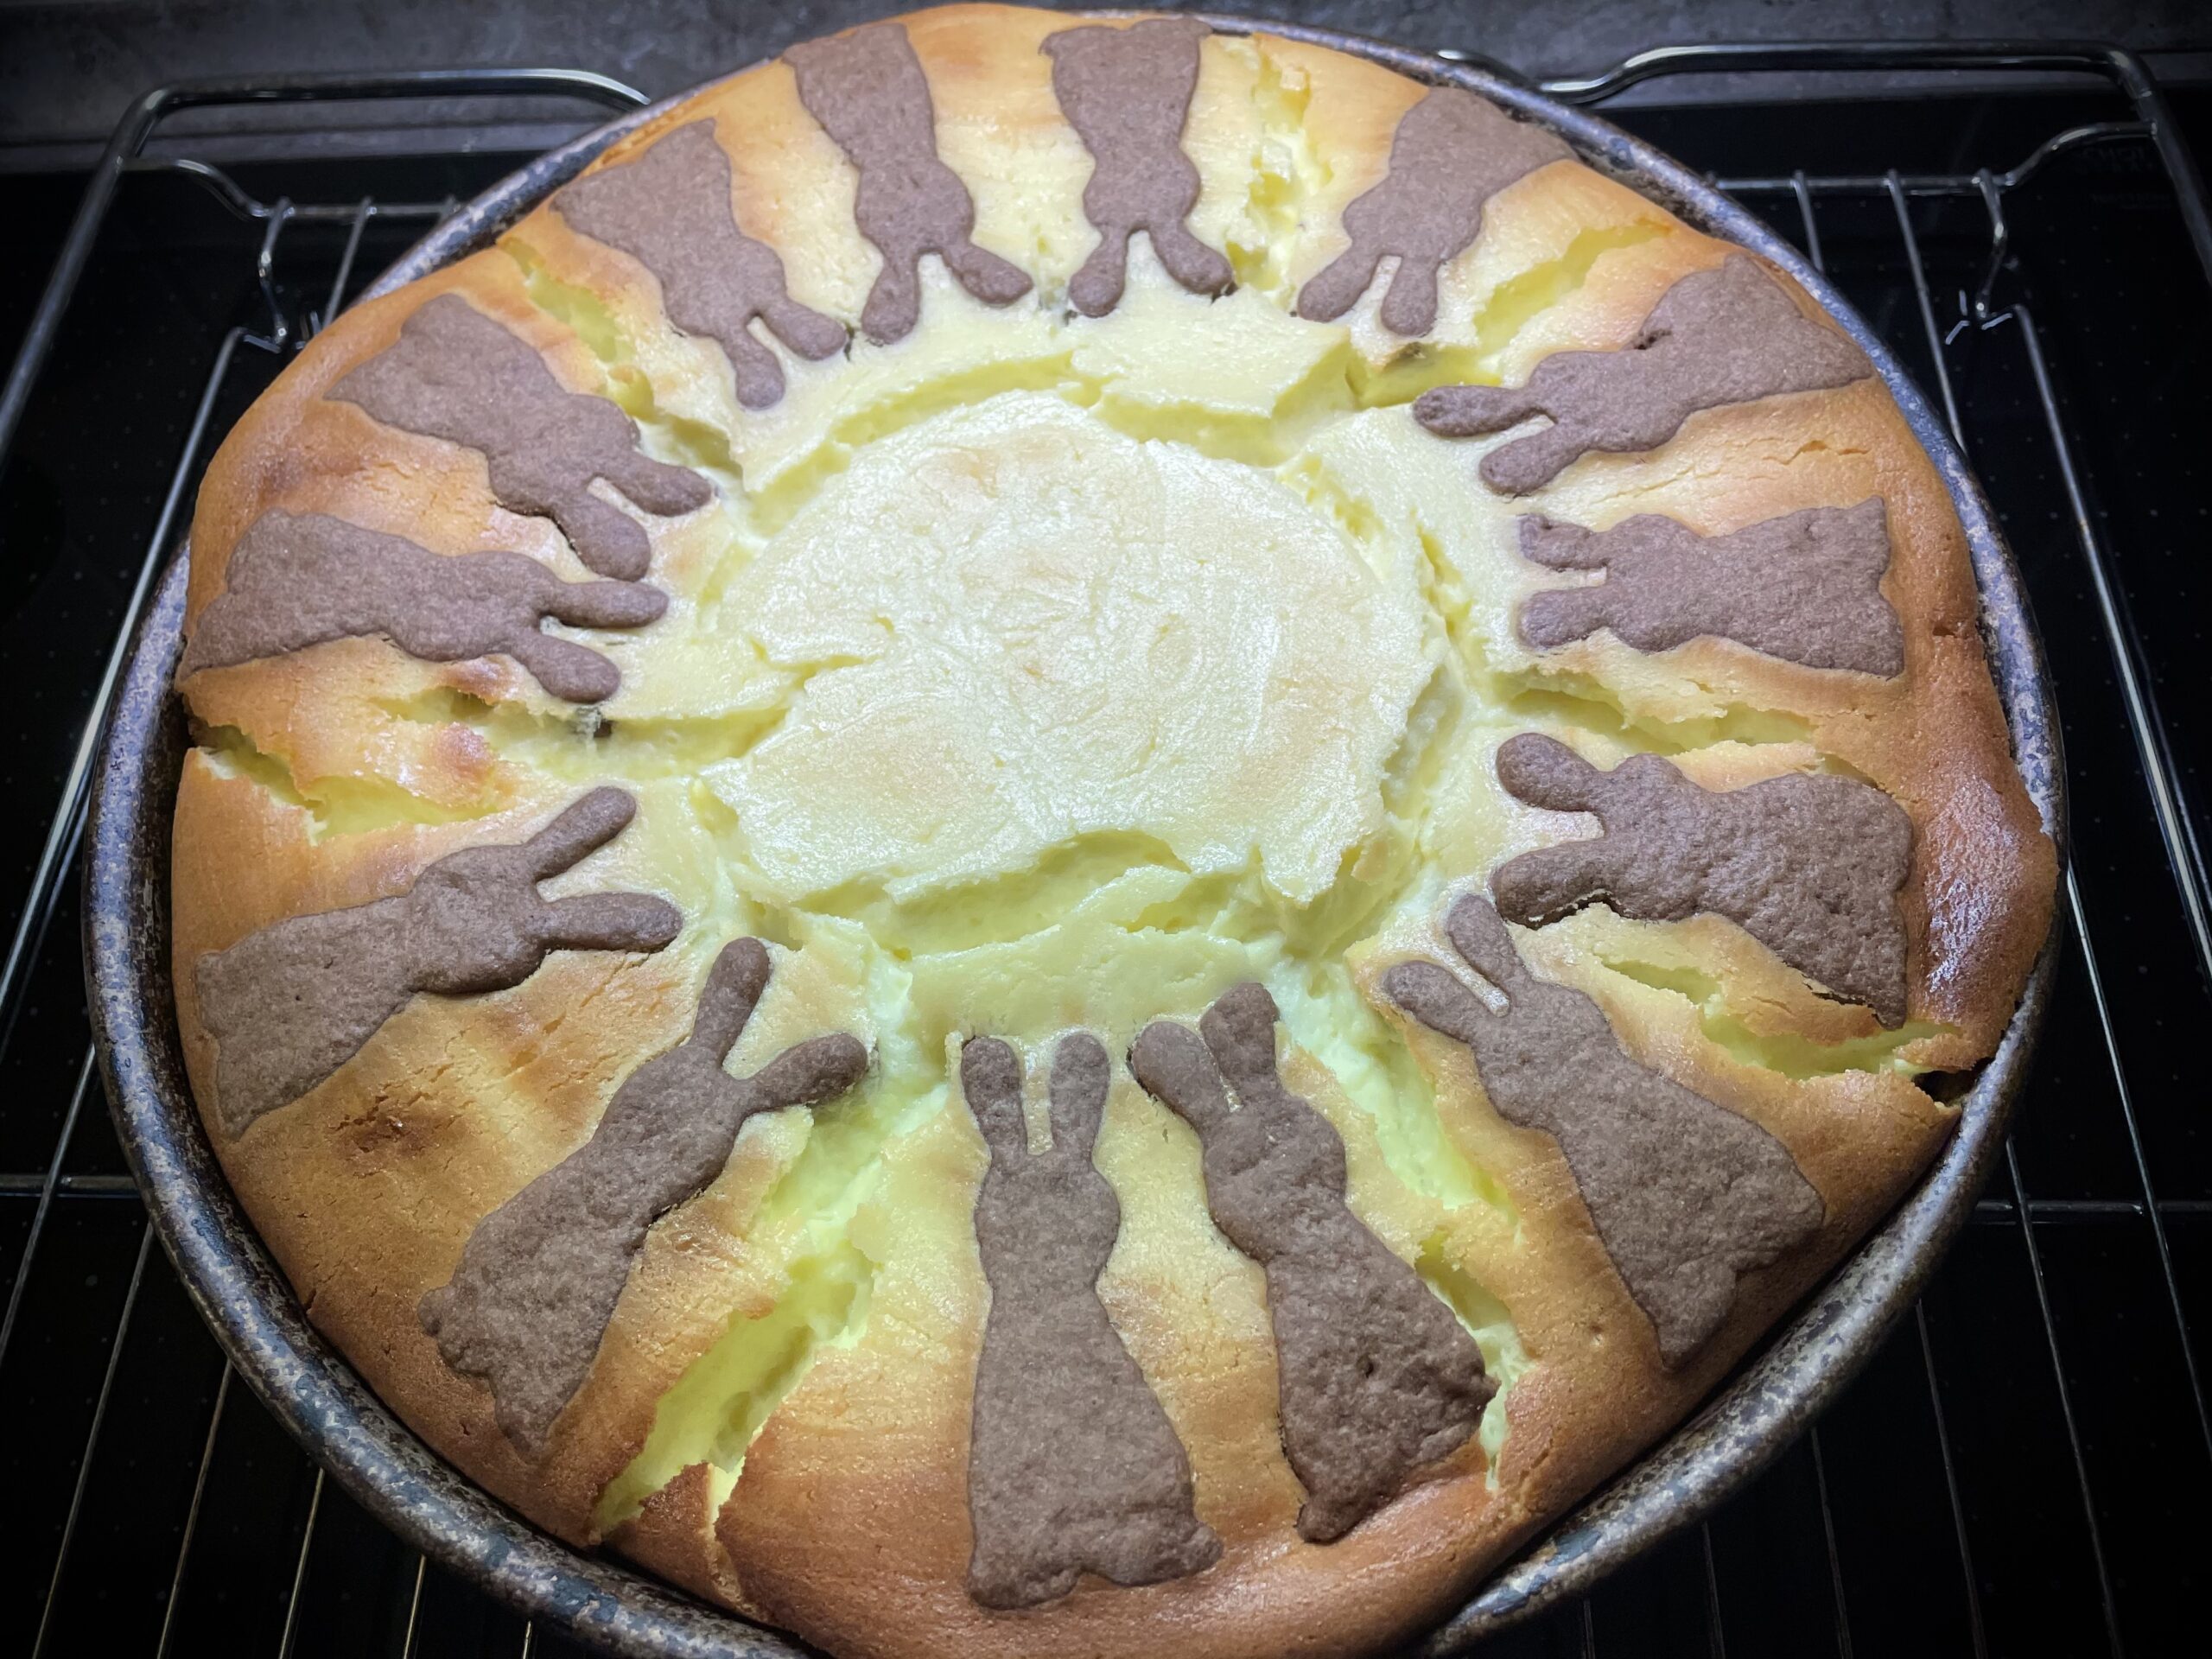 Bild zum Schritt 15 für die Kinder-Beschäftigung: 'Den fertigen Kuchen lasst ihr in der Kuchenform auskühlen! Die...'